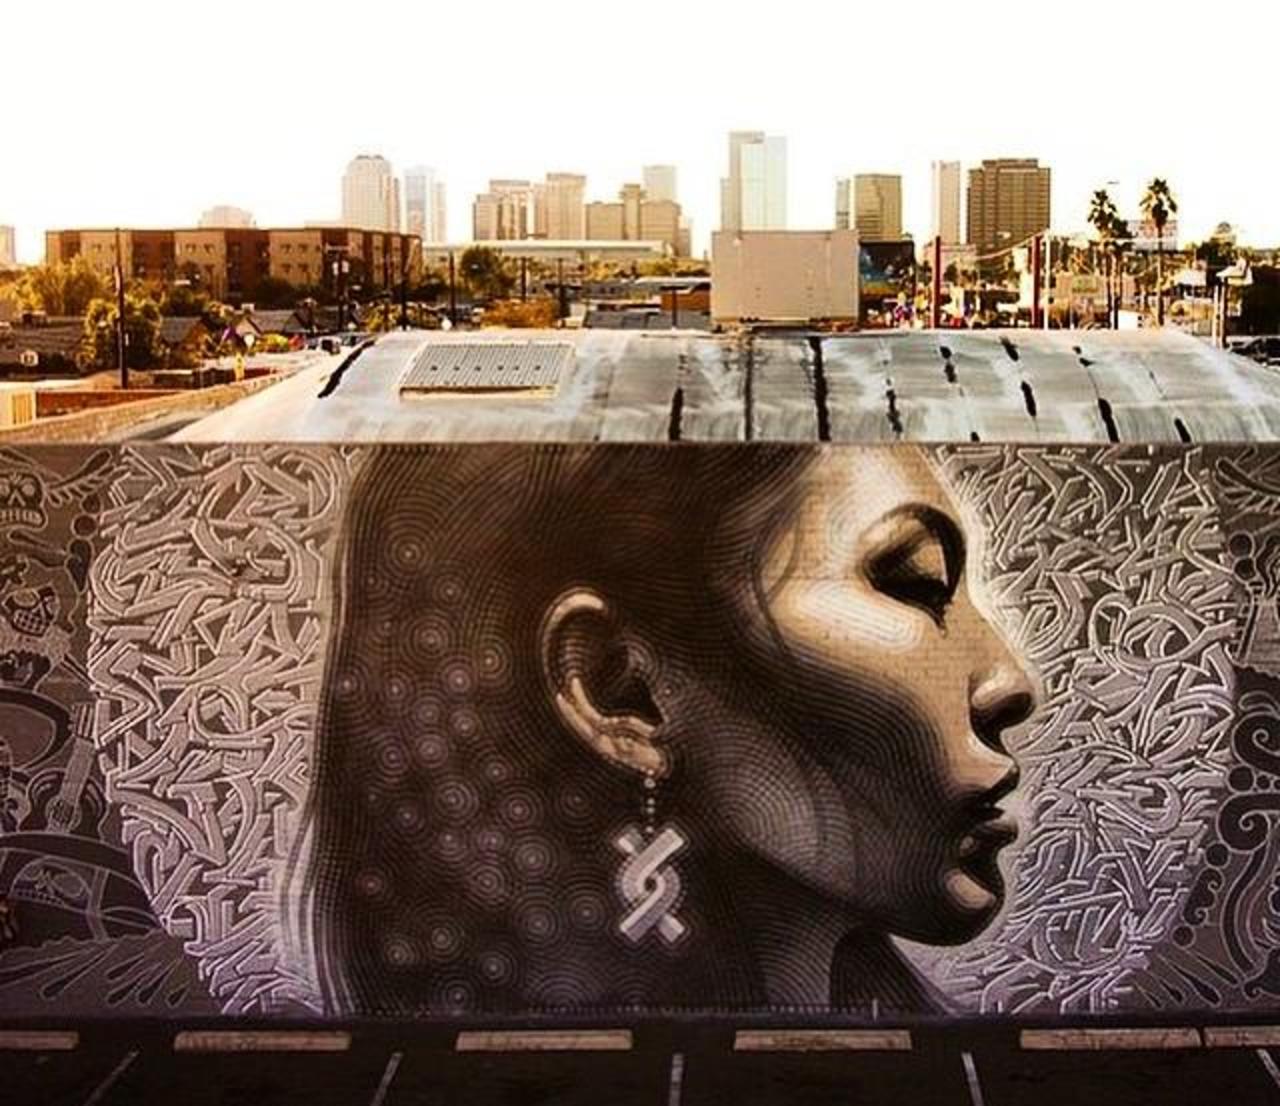 Latest Street Art work by El Mac in Phoenix, Arizona

#art #mural #graffiti #streetart http://t.co/Qwf0q1pSdk